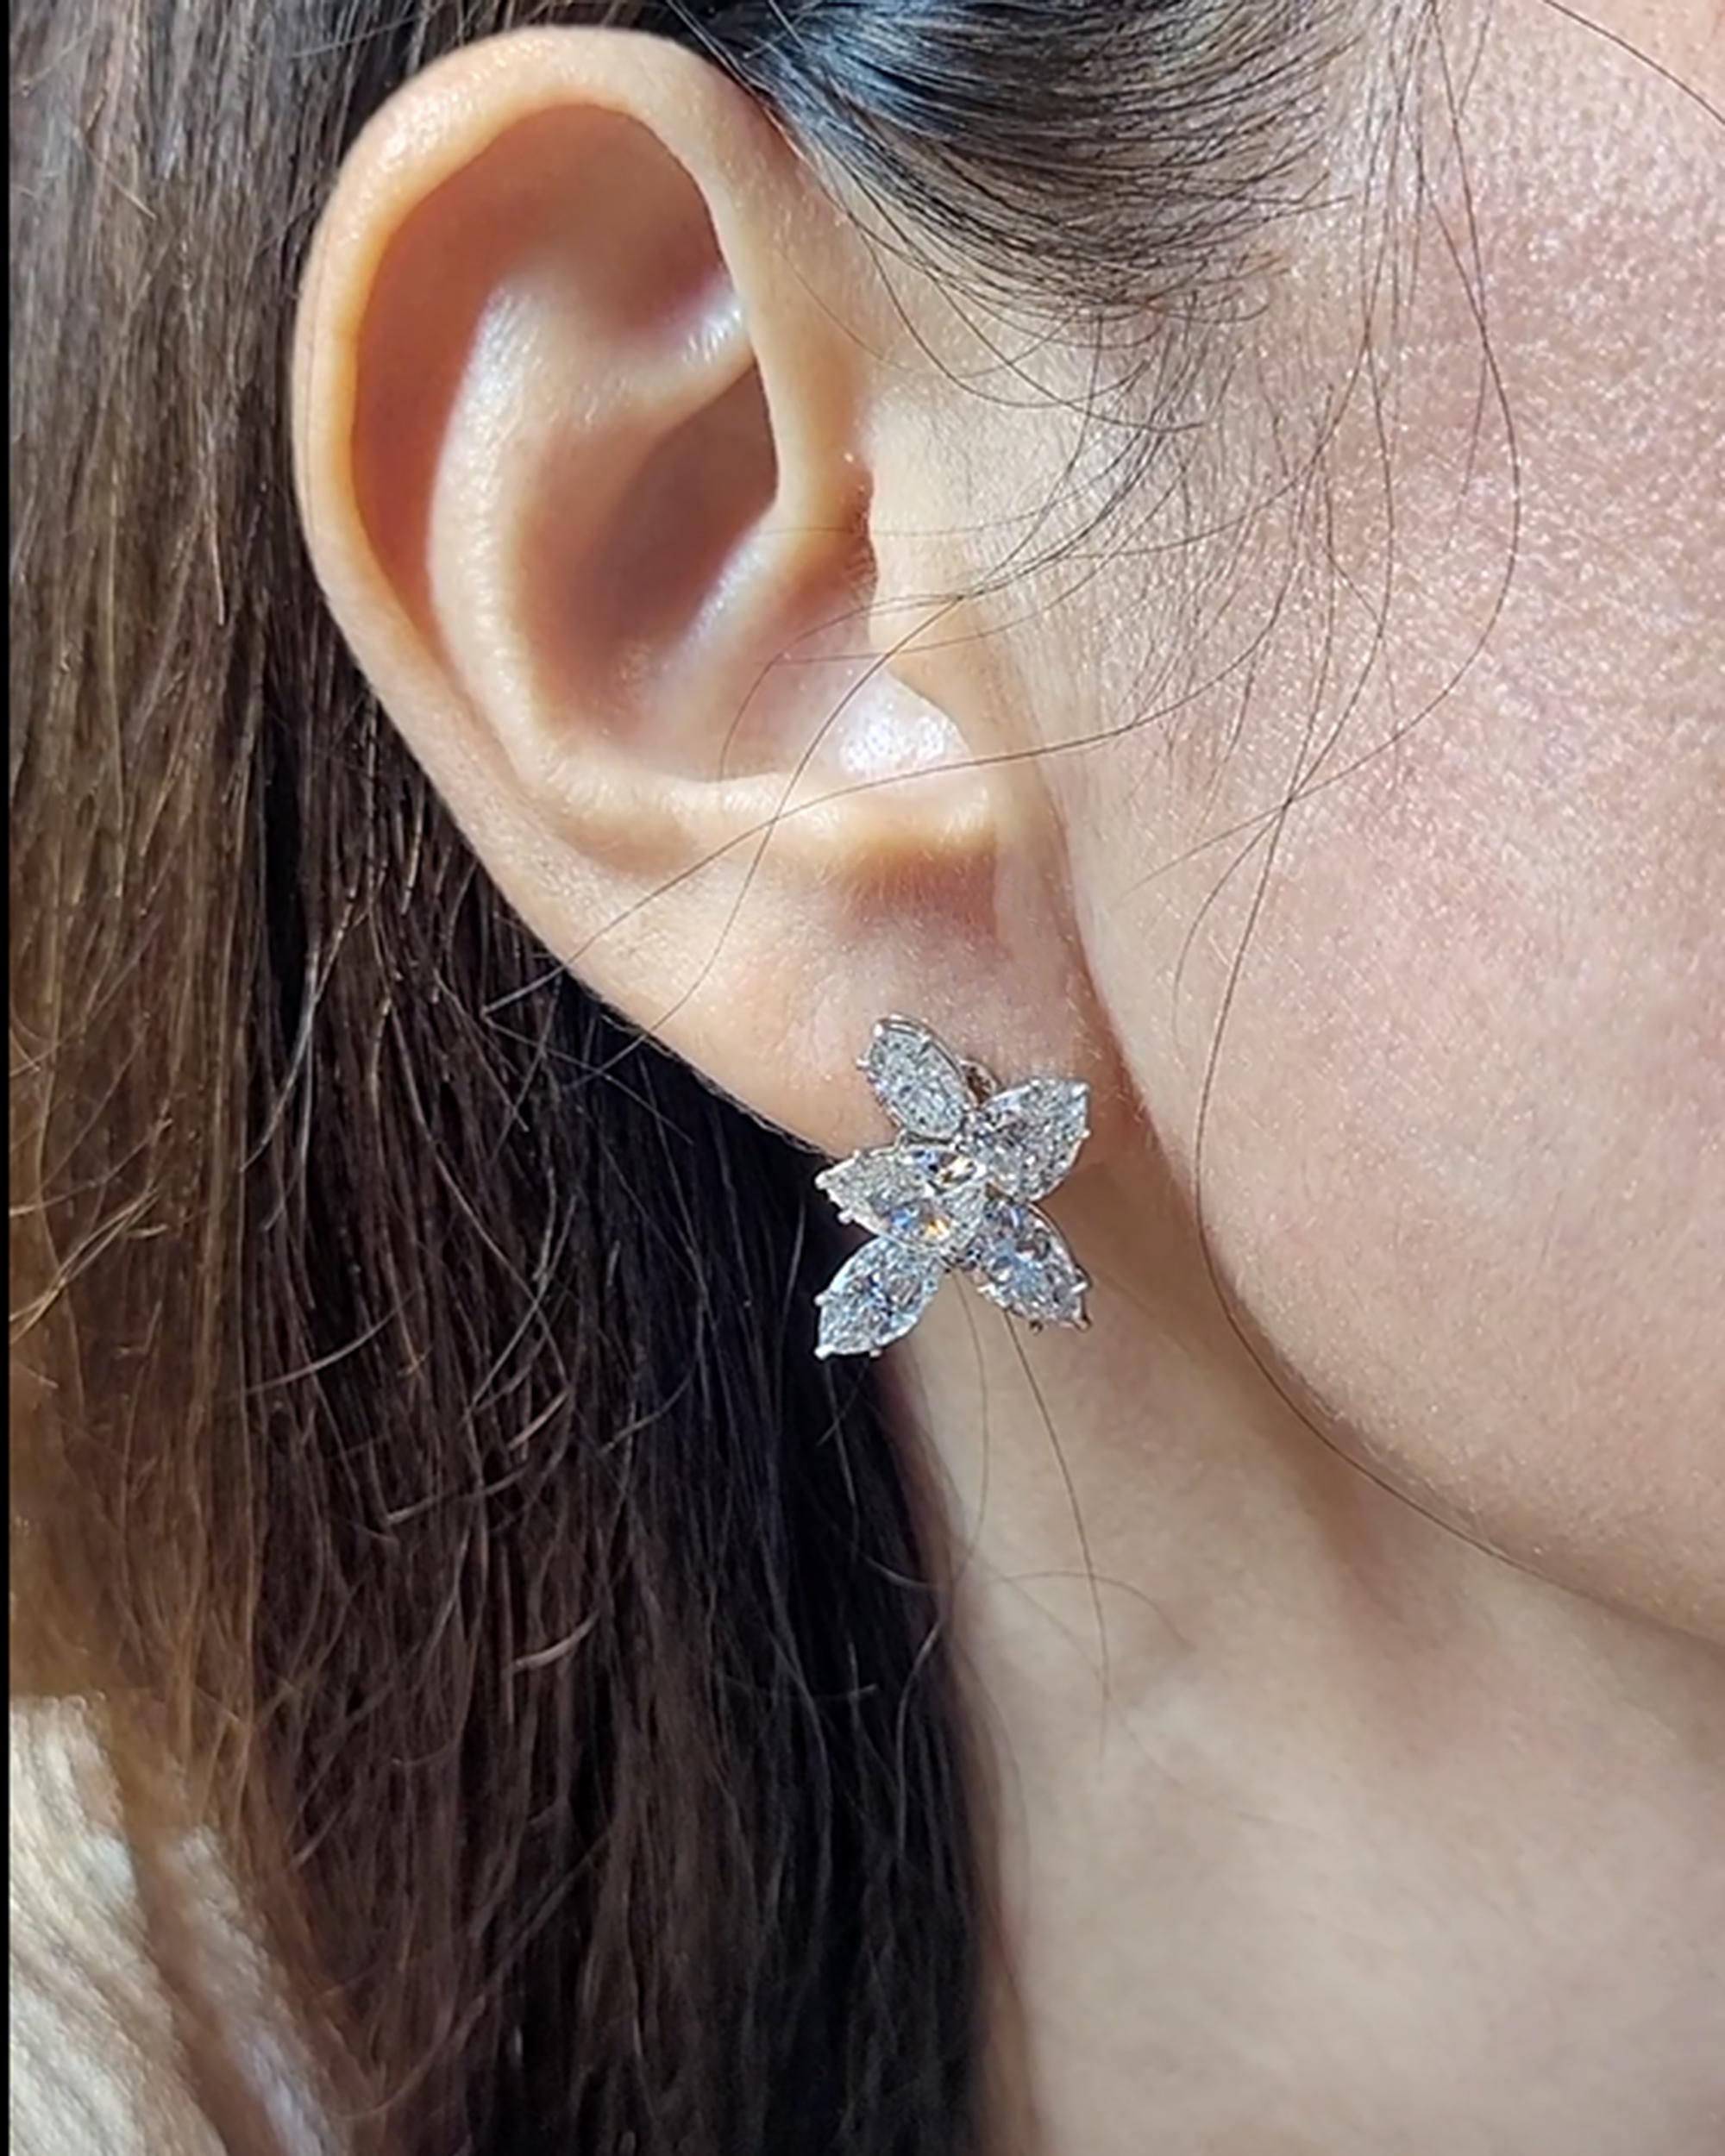 Wir stellen Ihnen ein atemberaubendes Paar Diamant-Cluster-Ohrringe vor, das alle Blicke auf sich ziehen wird. Diese Ohrringe zeichnen sich durch eine schillernde Kombination aus marquise- und birnenförmigen Diamanten aus, die einen wirklich